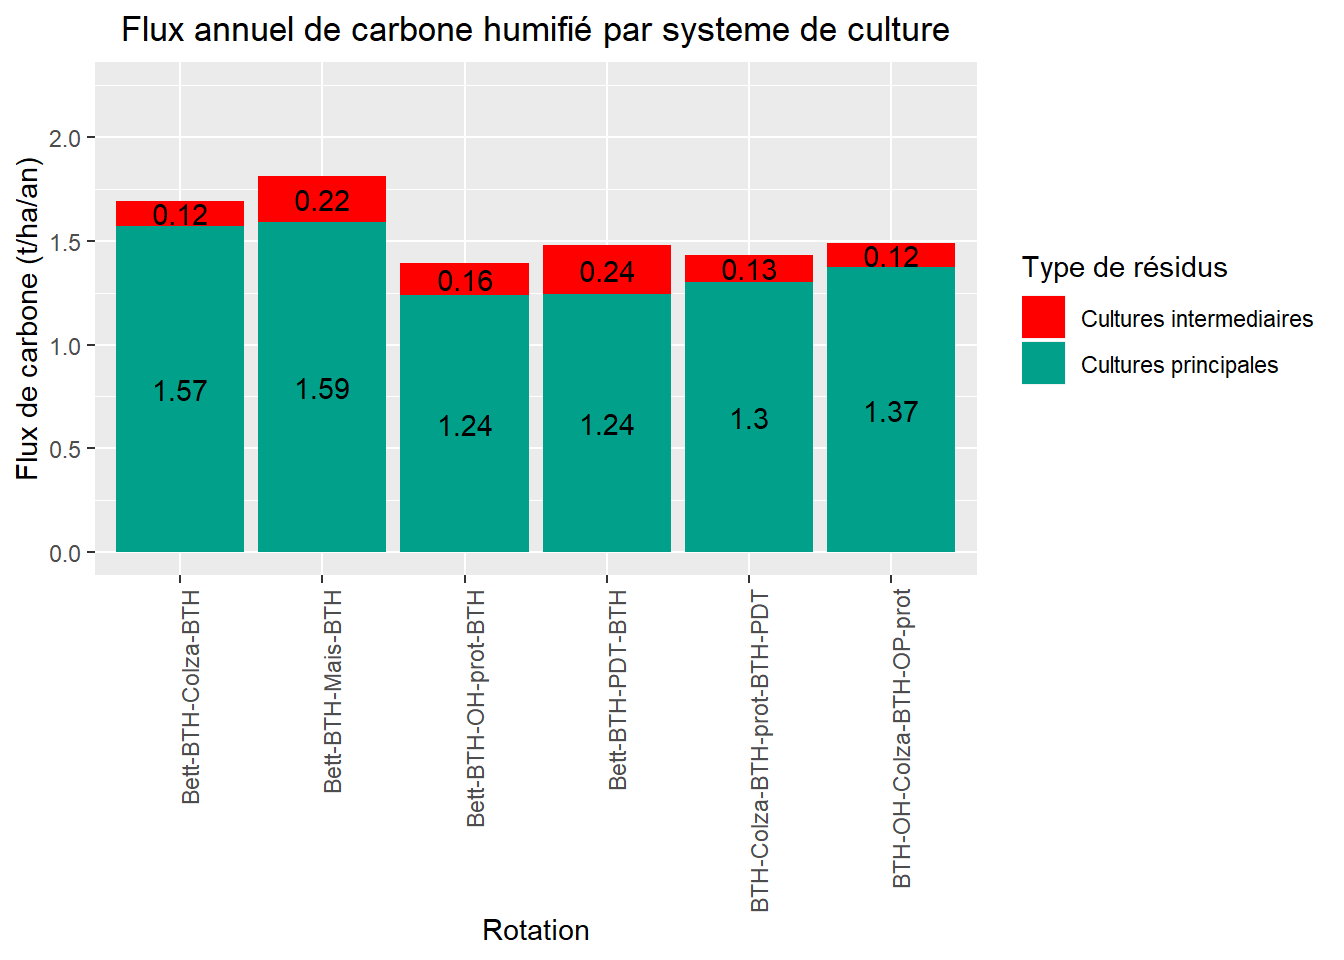 Flux de carbone humifié par rotation (Source des données : [projet ABC Terre 2A](http://www.agro-transfert-rt.org/abcterre-2a/demarche-abcterre/){target="_blank"} )